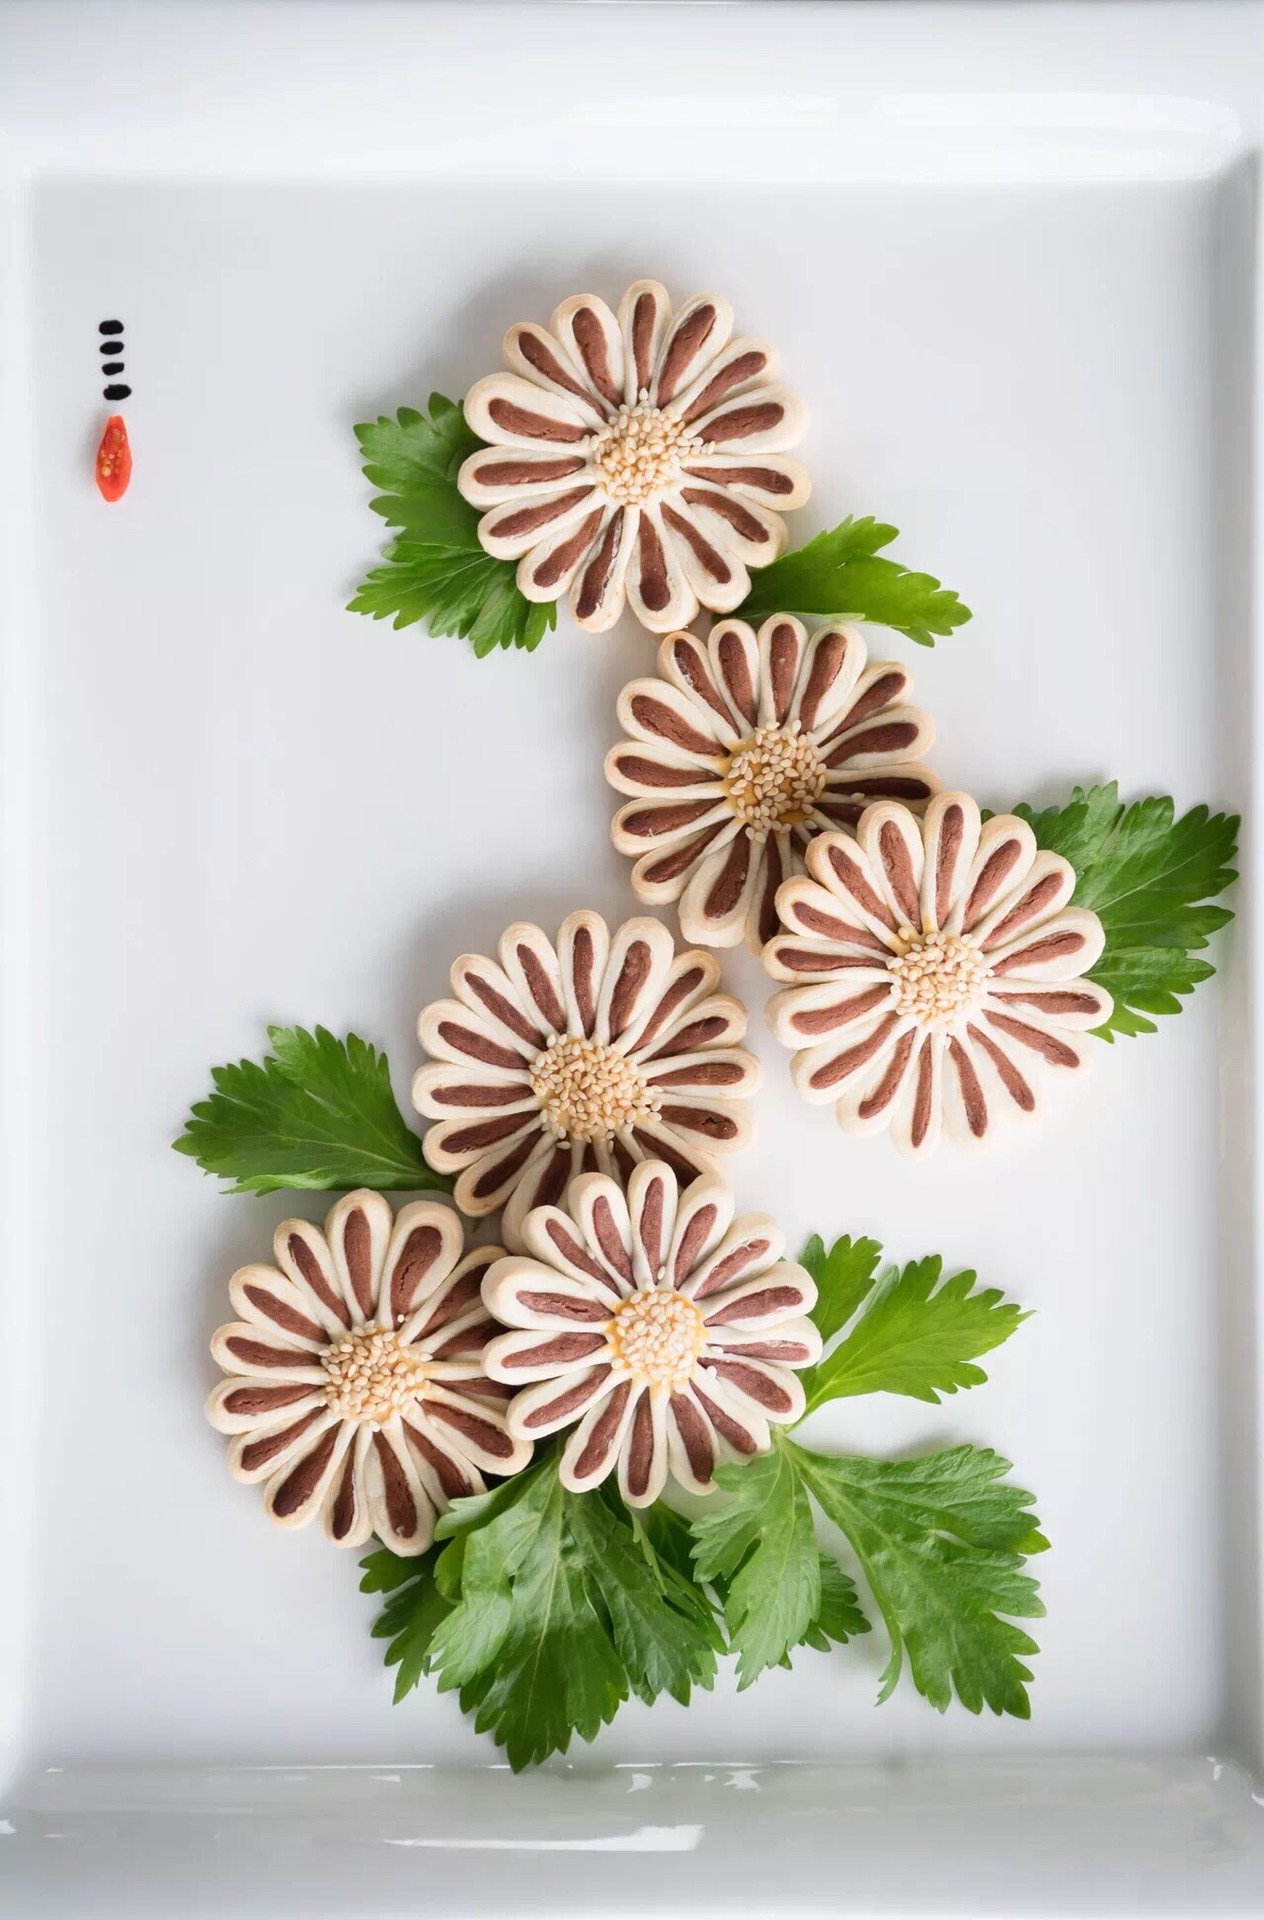 菊花酥饼怎么做_菊花酥饼的做法_豆果美食